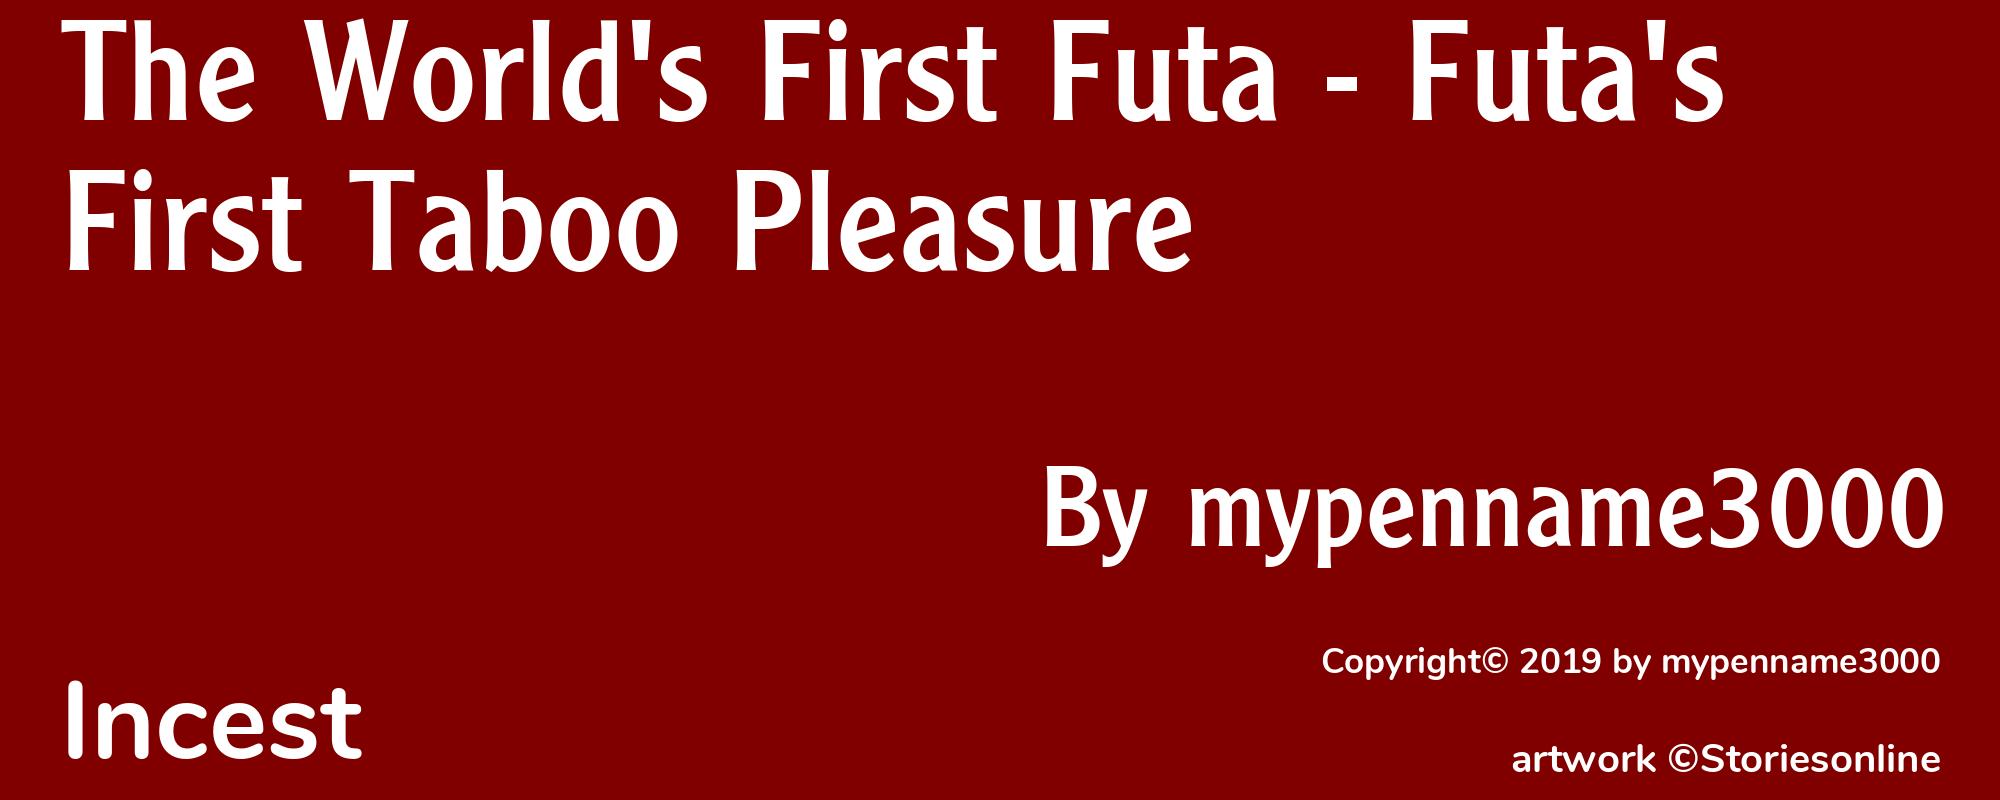 The World's First Futa - Futa's First Taboo Pleasure - Cover